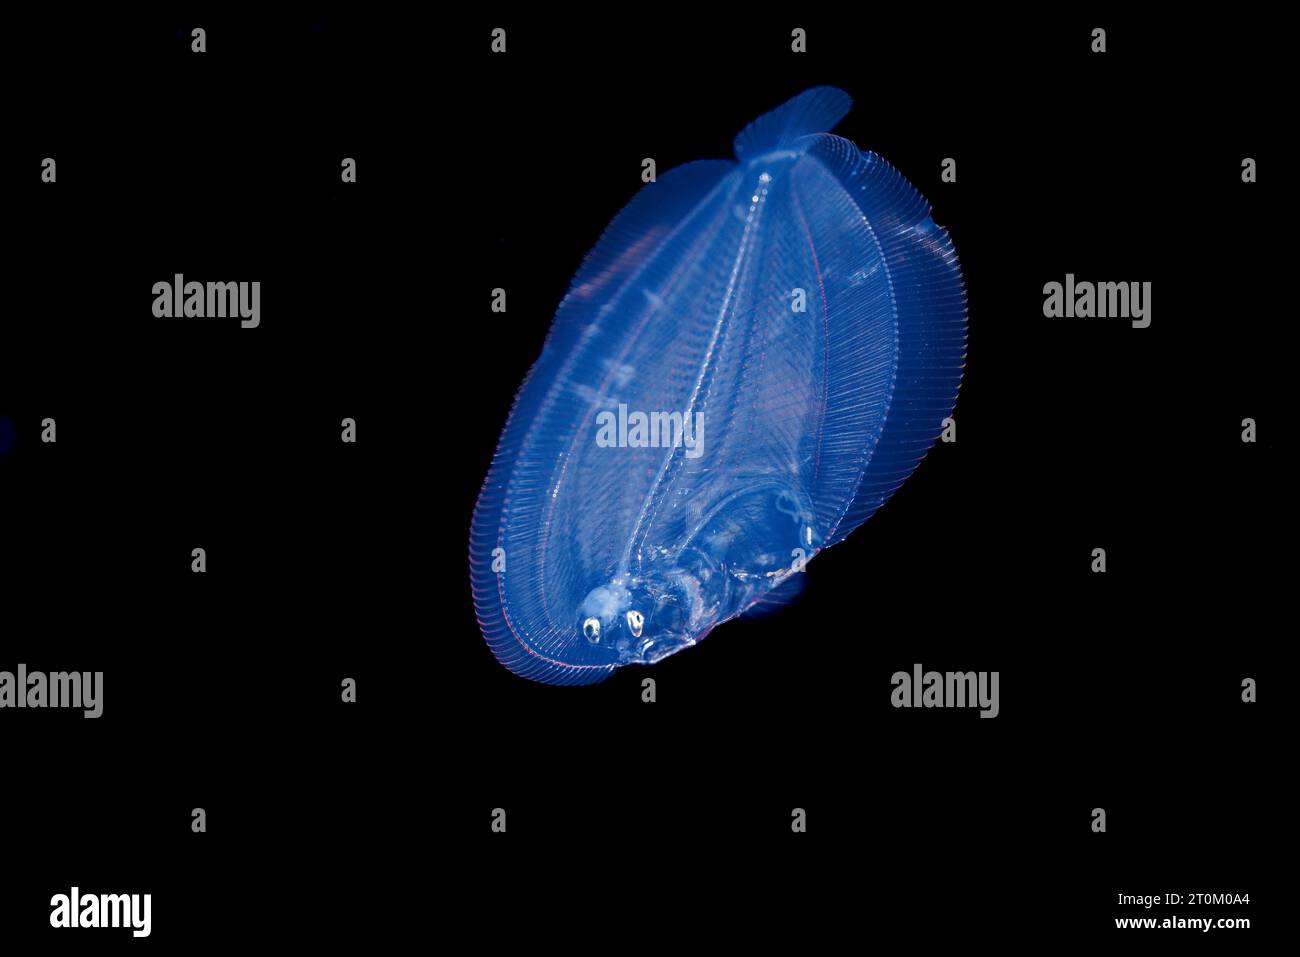 Una larva della passera del pavone, Bothus lunatus, fotografata durante un'immersione alla deriva delle acque nere, in mare aperto a 40 piedi con fondo a 2000 più piedi sotto, S Foto Stock